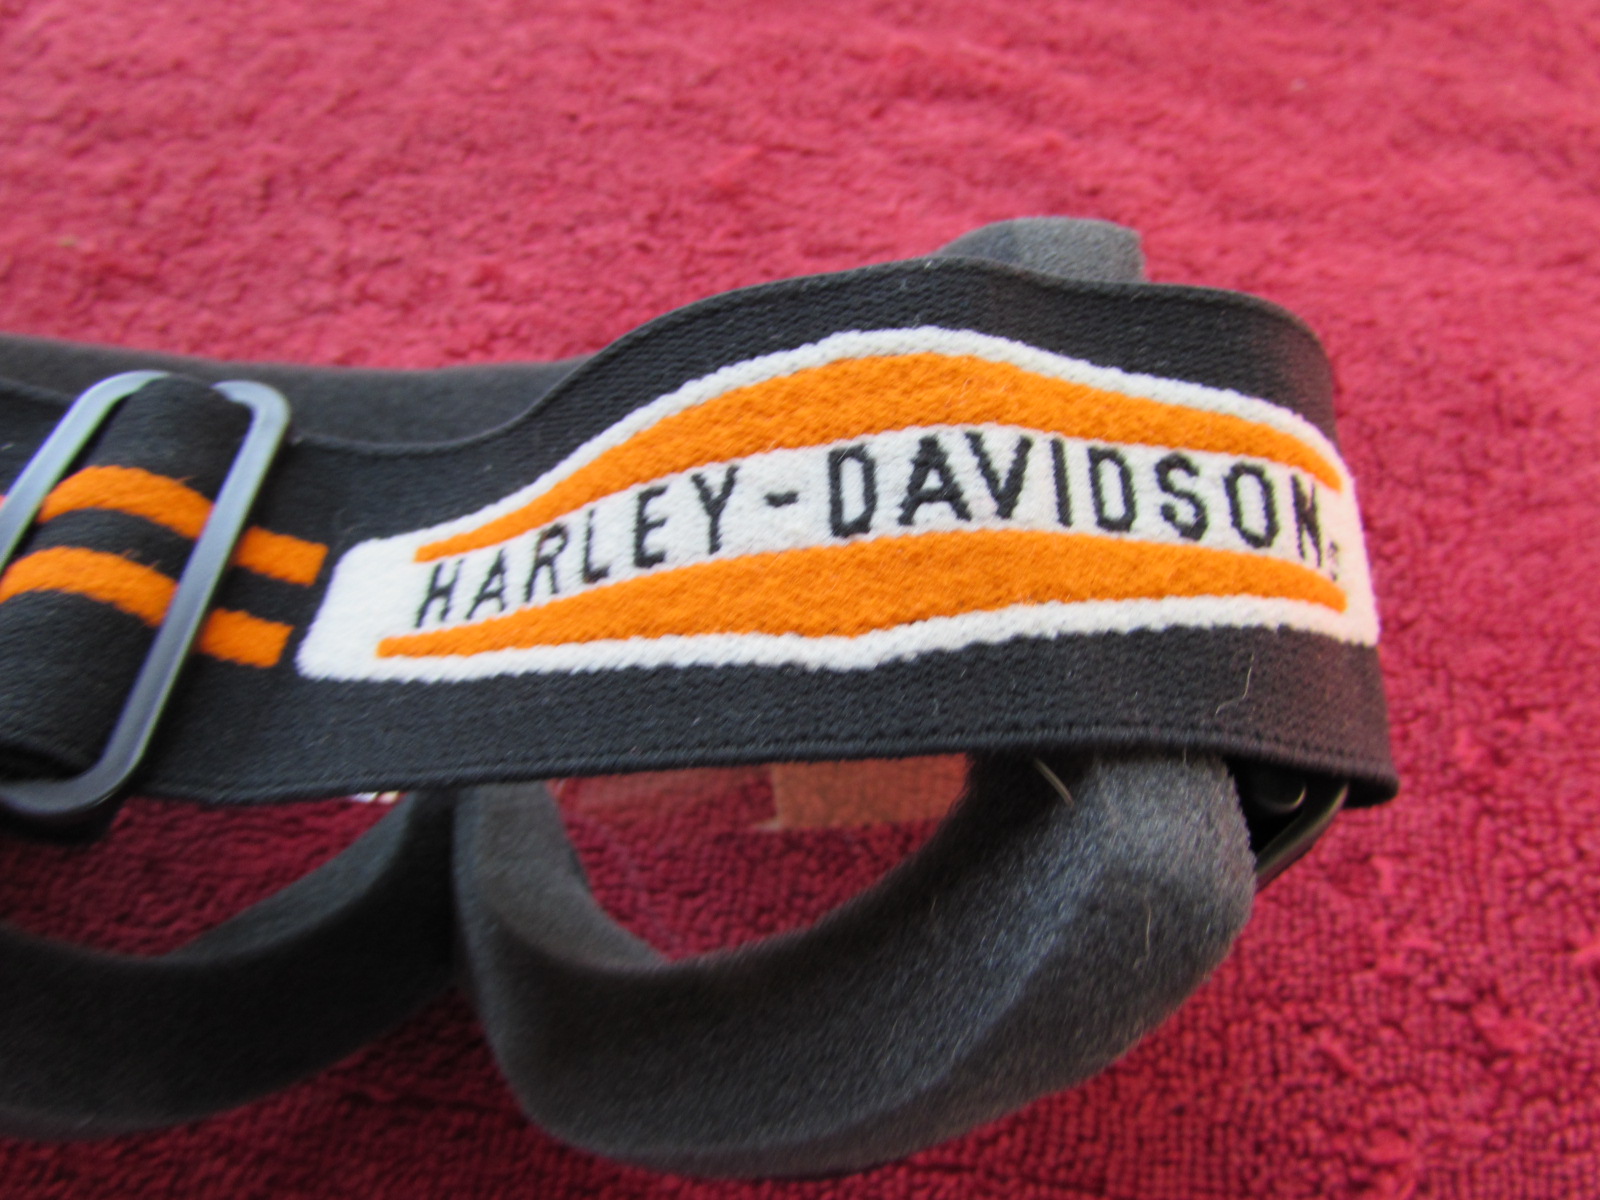 Harley Davidson Goggles - Harley Davidson Forums